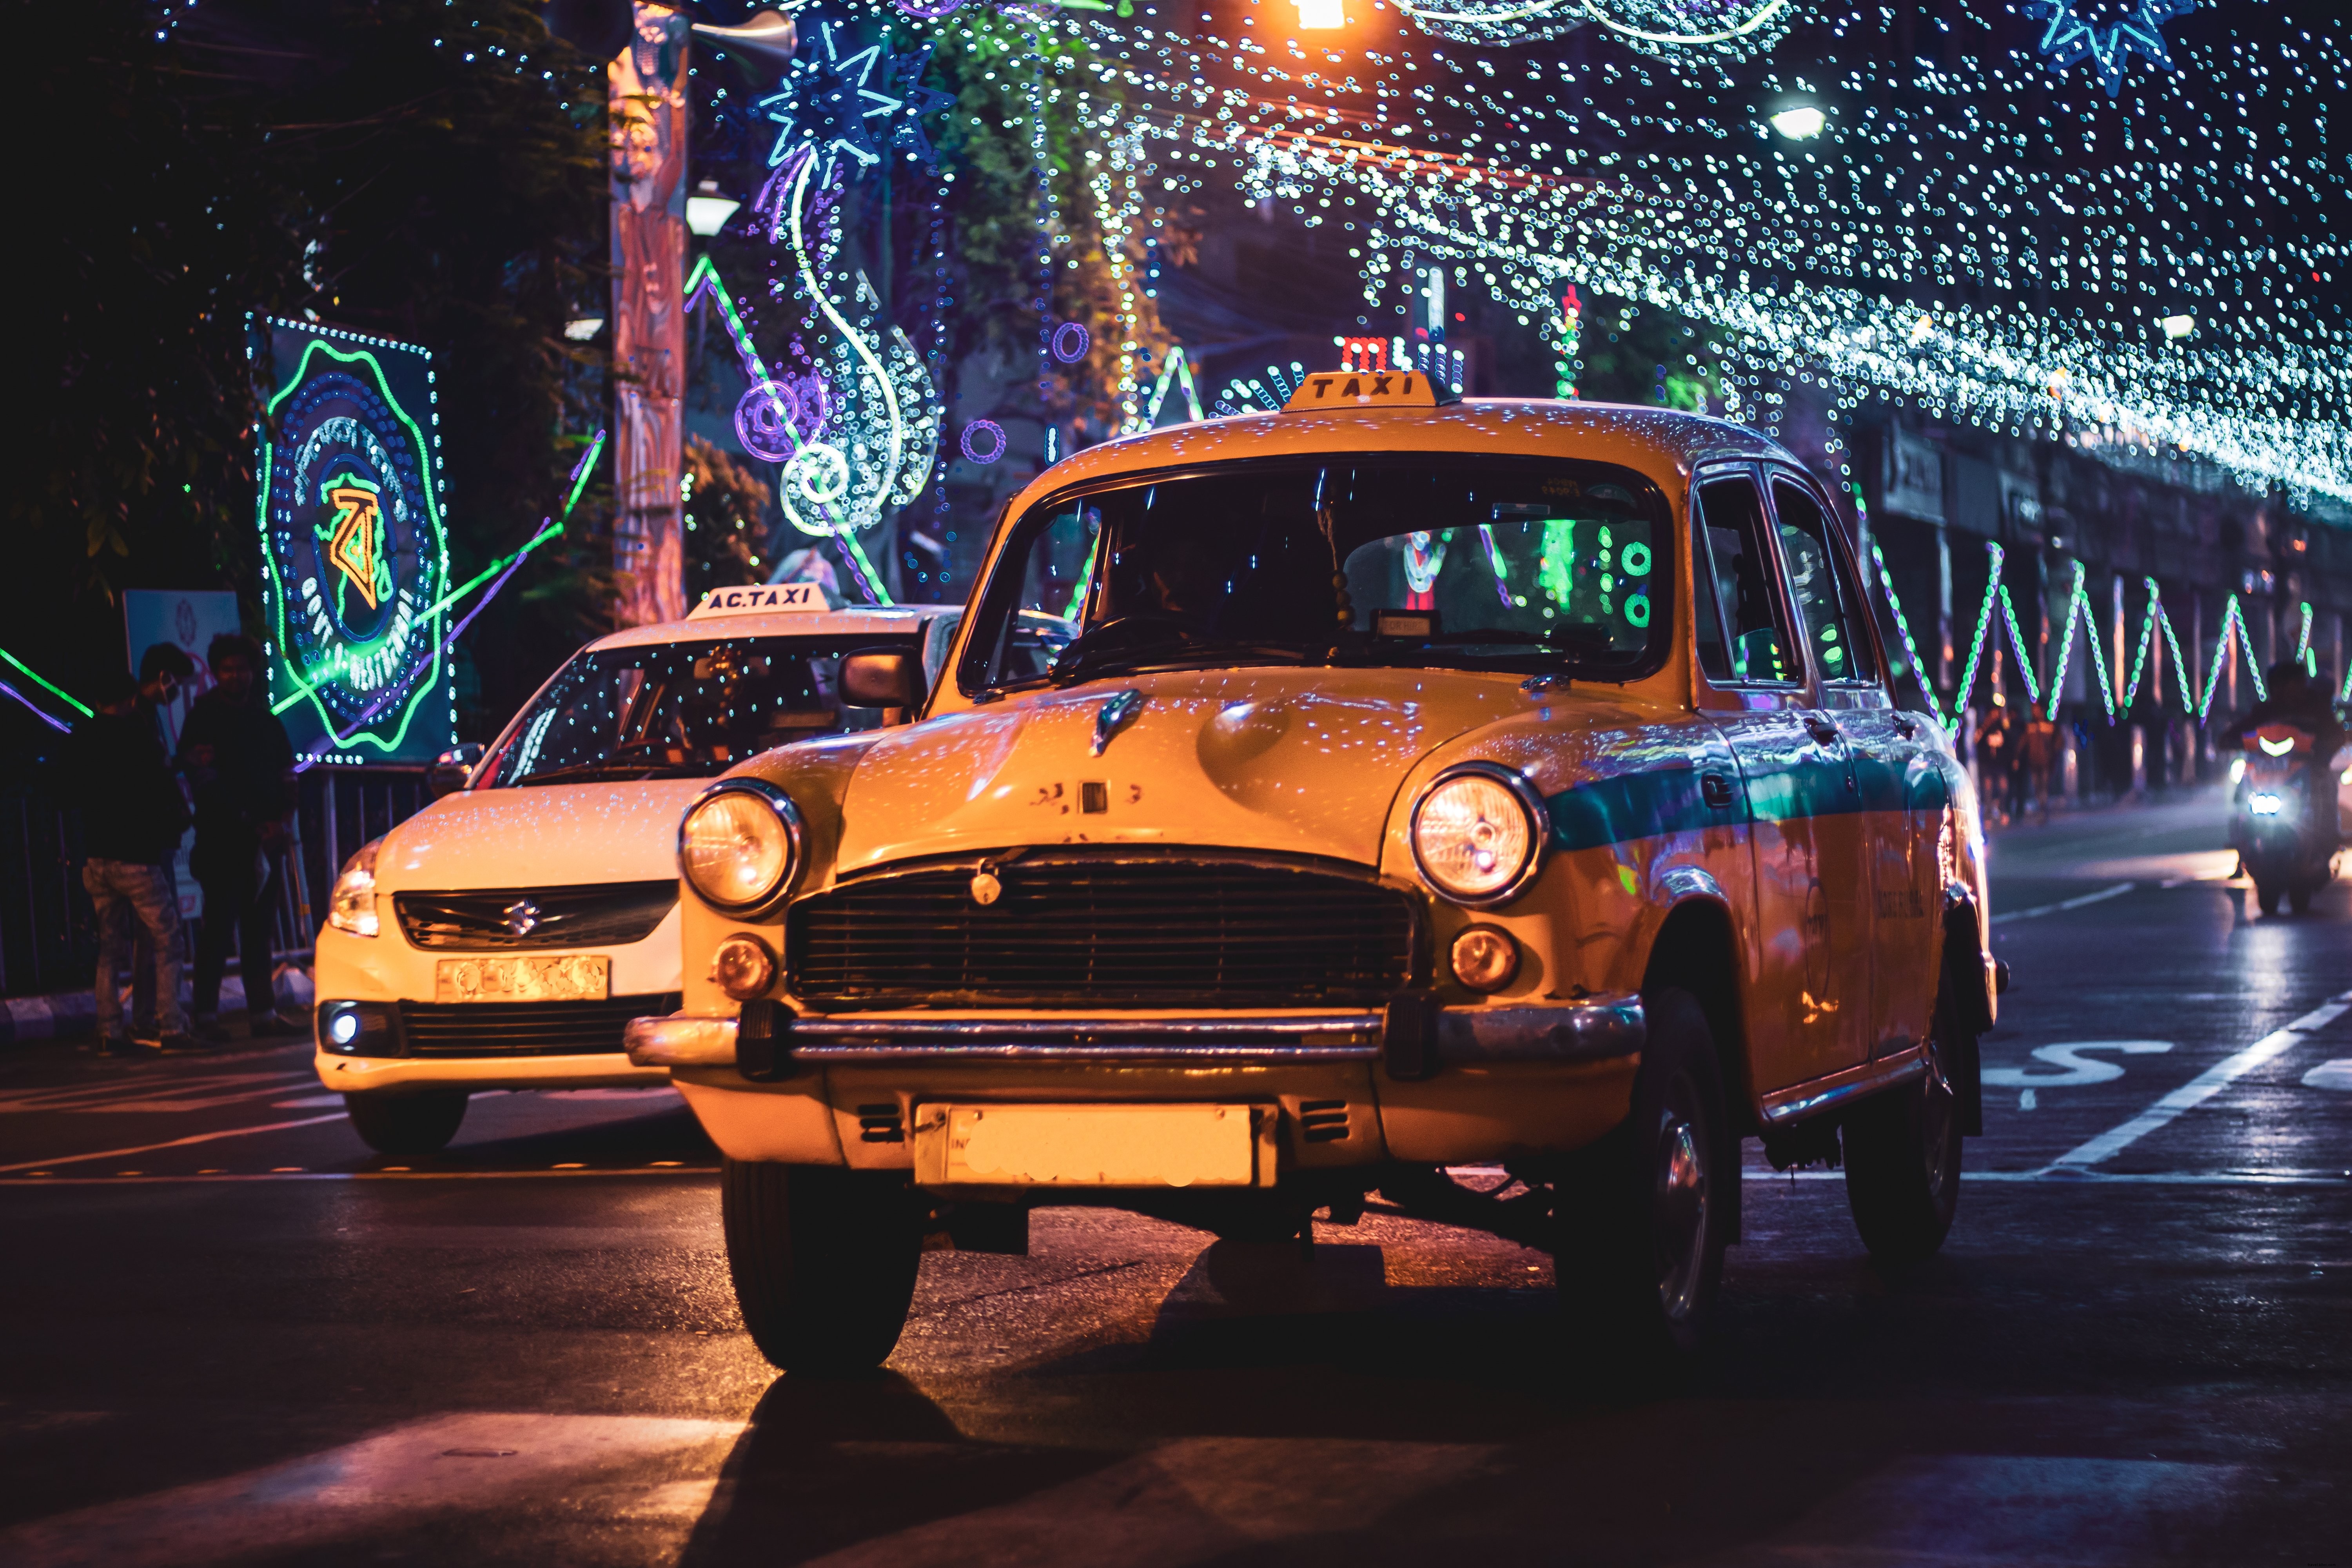 Taxi Light avec des guirlandes lumineuses la nuit Photo 